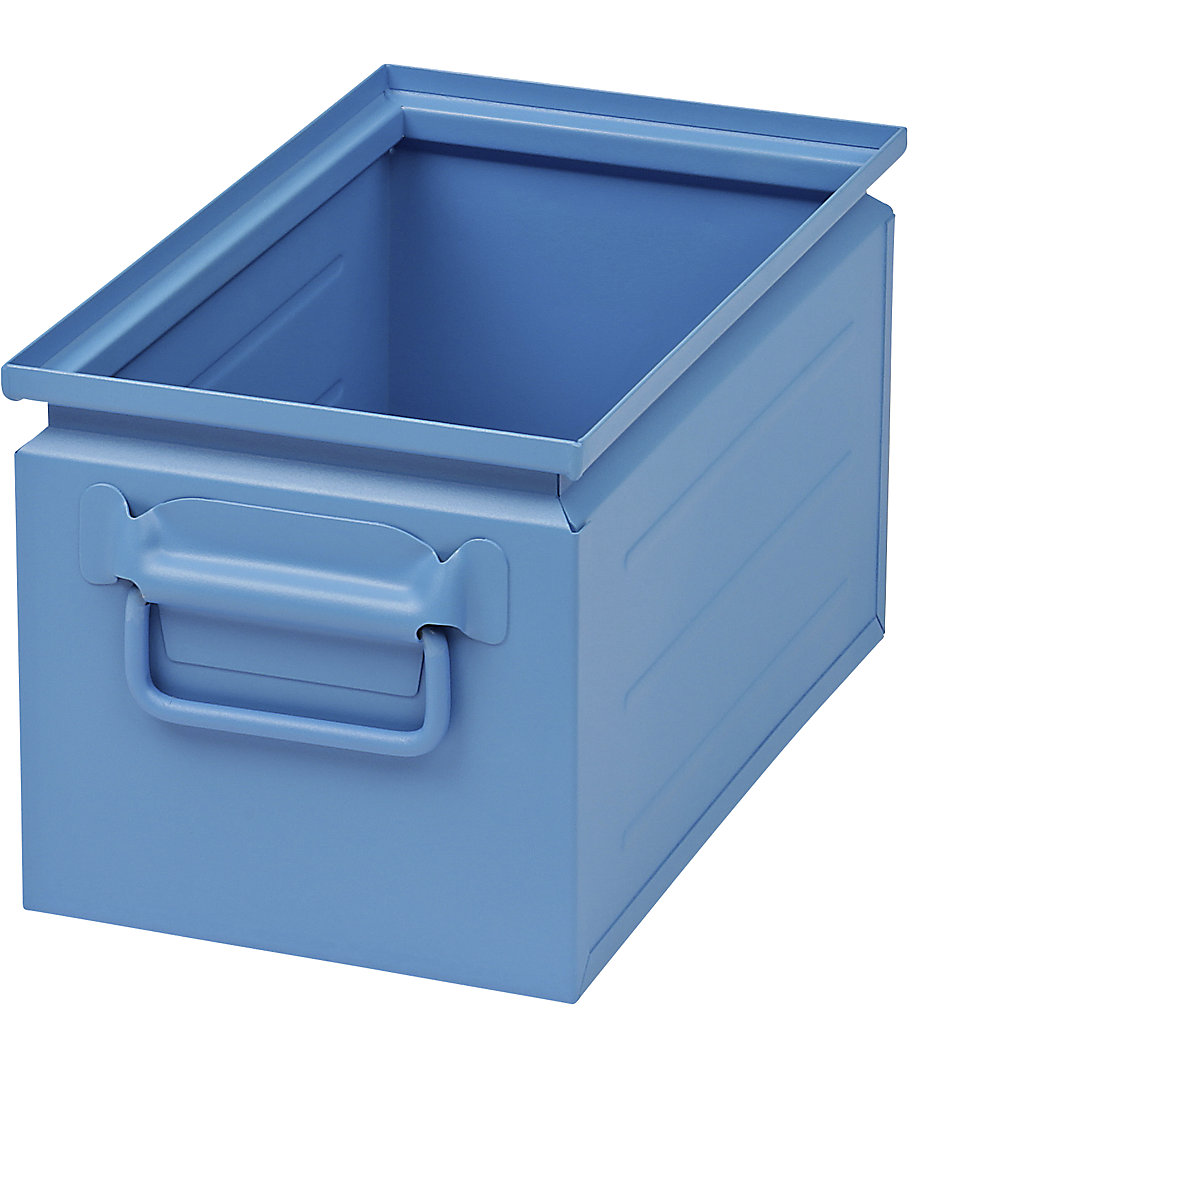 Stapelkasten aus Stahlblech, Volumen ca. 14 l, lichtblau RAL 5012-3